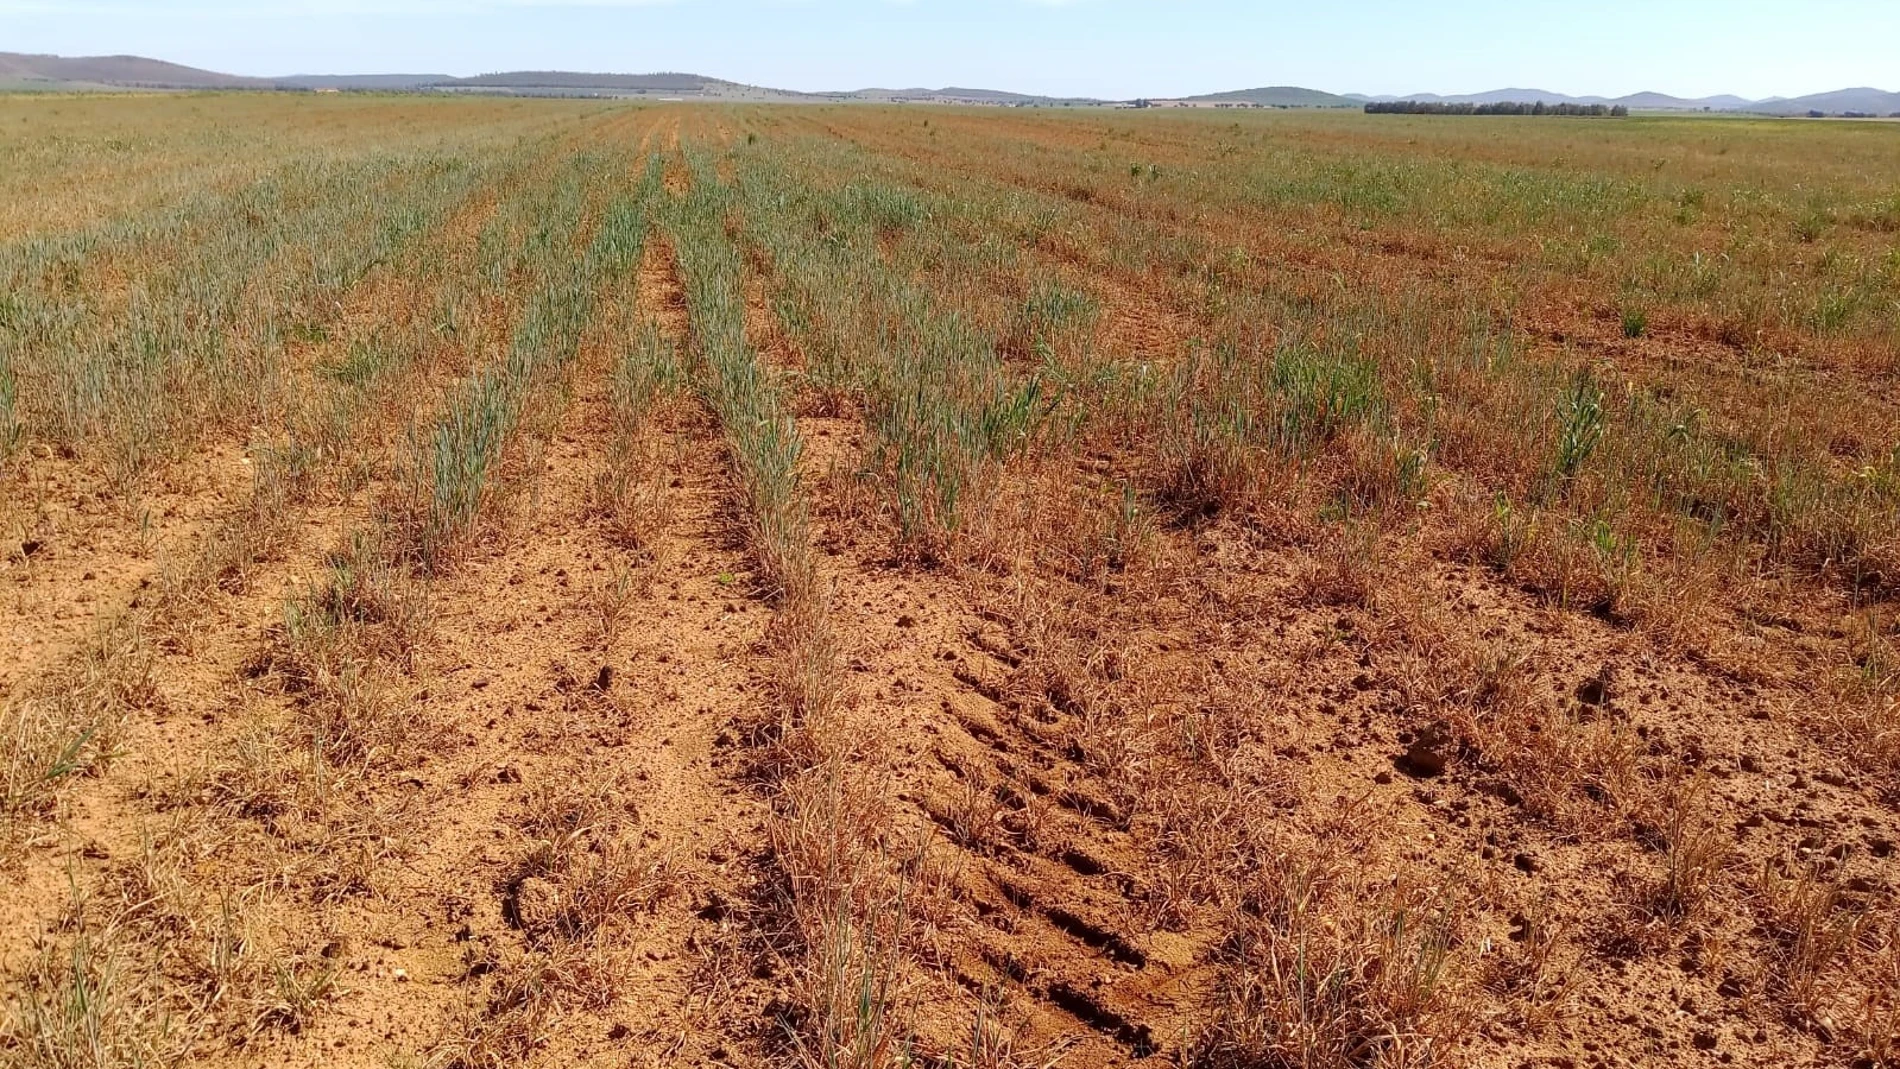 Sequía en cereales en Extremadura
APAG EXTREMADURA ASAJA
30/03/2023